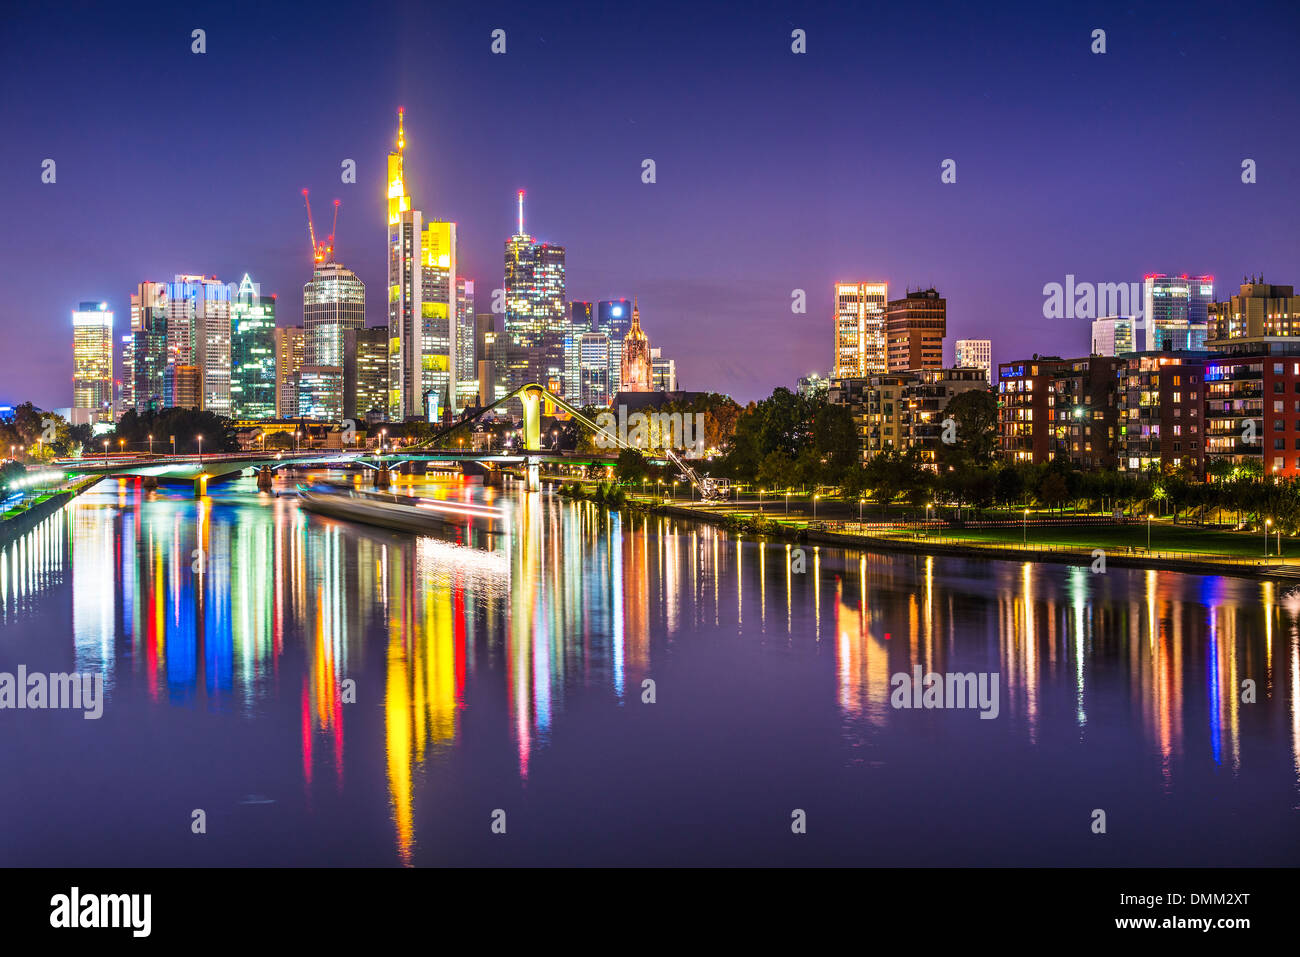 Frankfurt, Germany on the Main River. Stock Photo